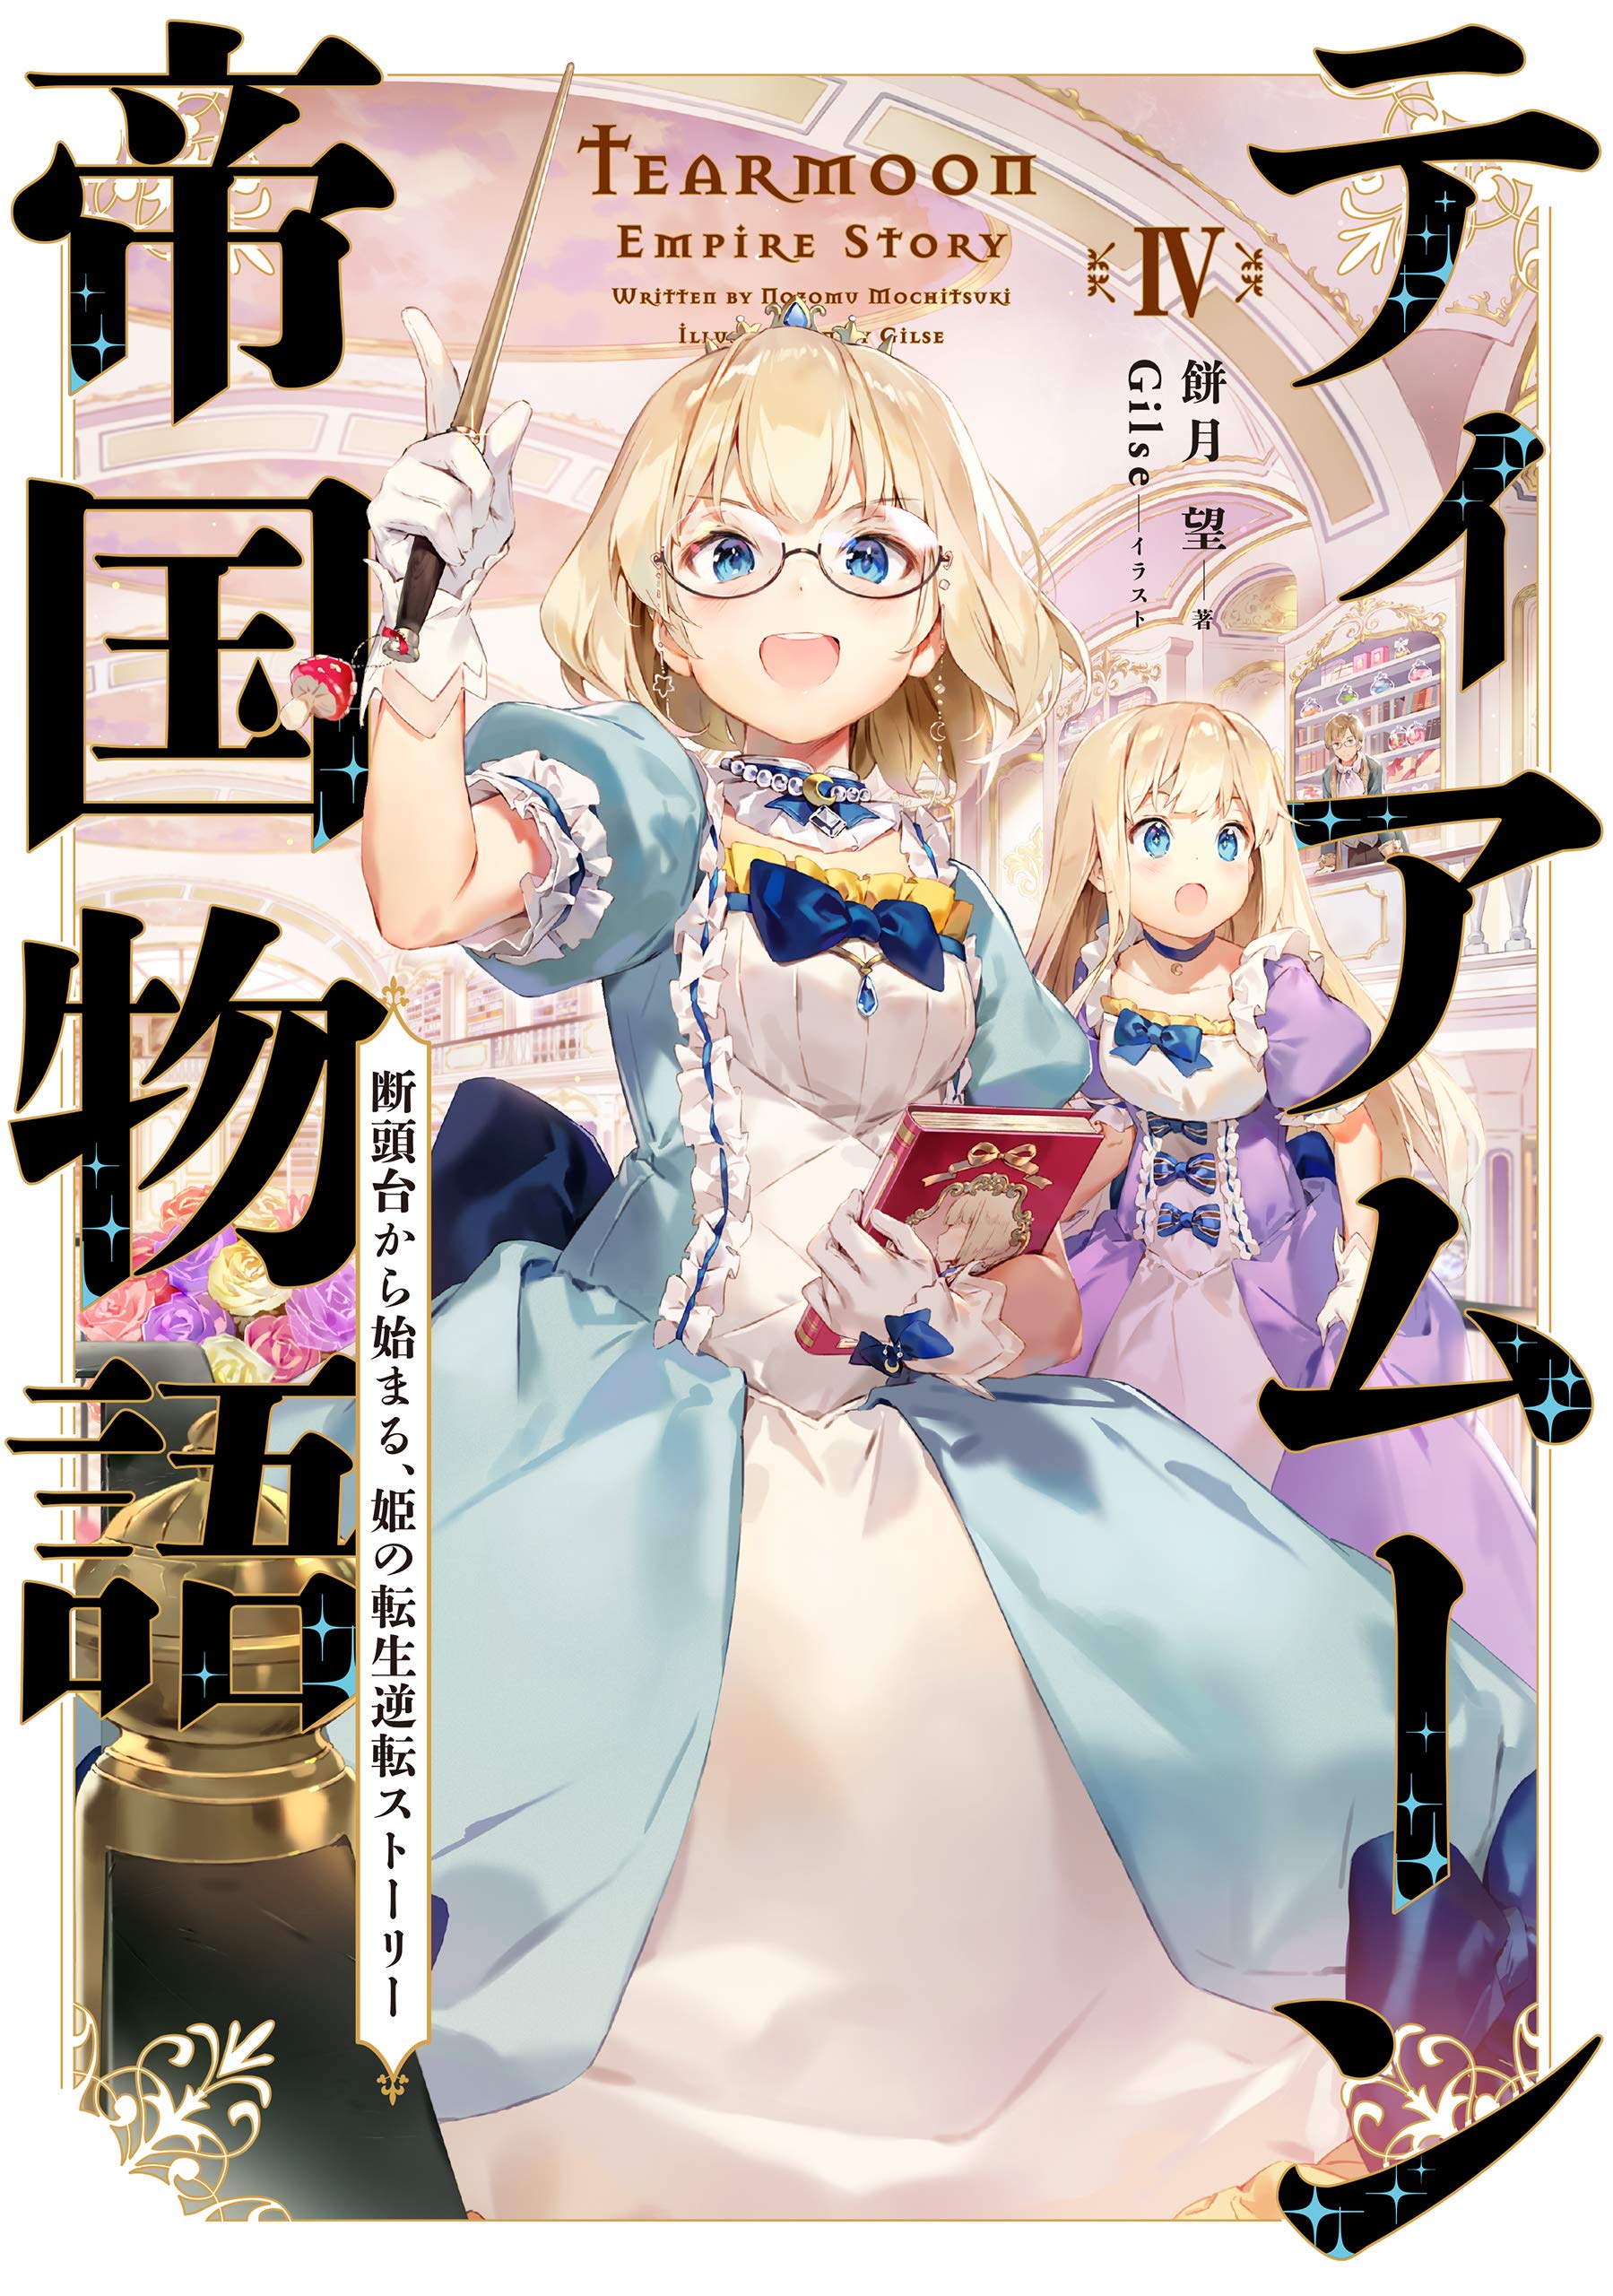 Read Tearmoon Empire Story Manga on Mangakakalot